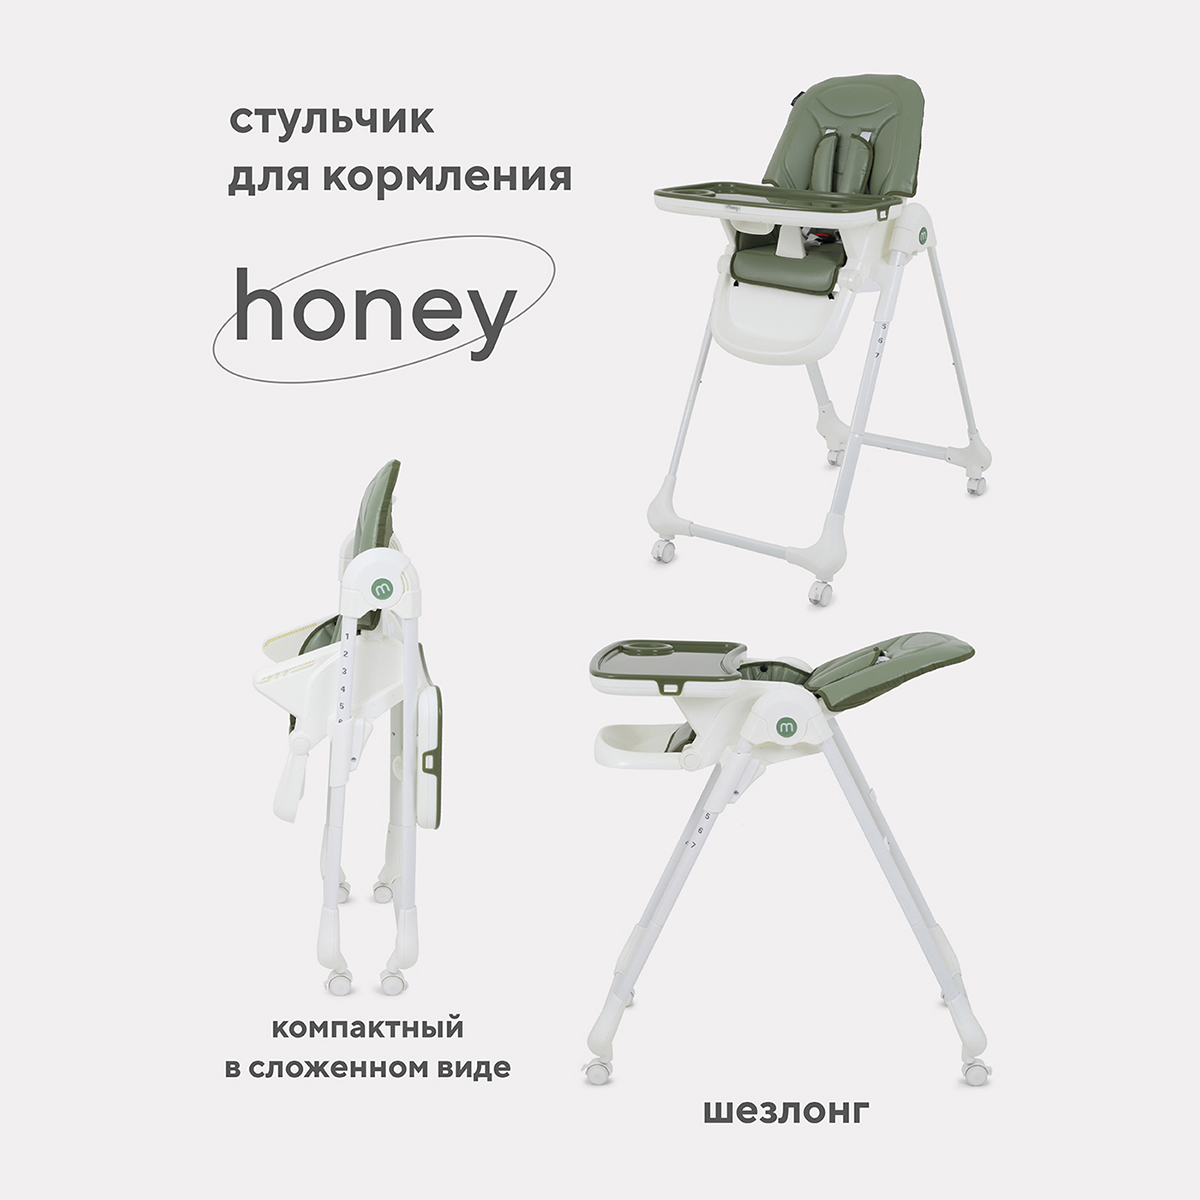 Стульчик для кормления MOWBaby HONEY от 6 месяцев RH600 green стульчик для кормления mowbaby honey от 6 месяцев rh600 green